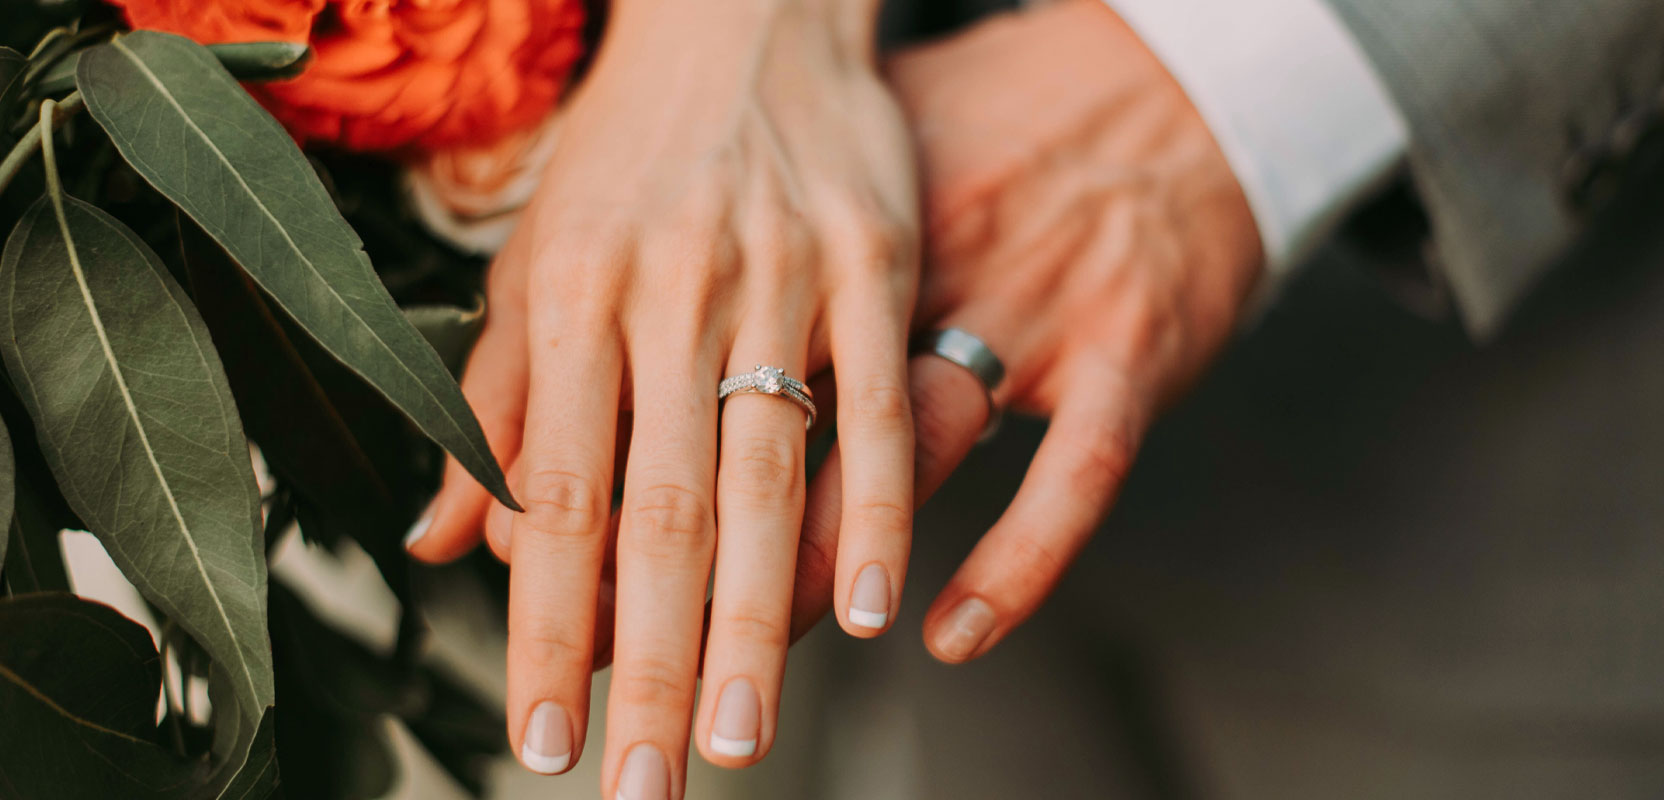 leef ermee Geef rechten Riskeren Does Renters Insurance Cover Lost Wedding Rings? | RentSwift